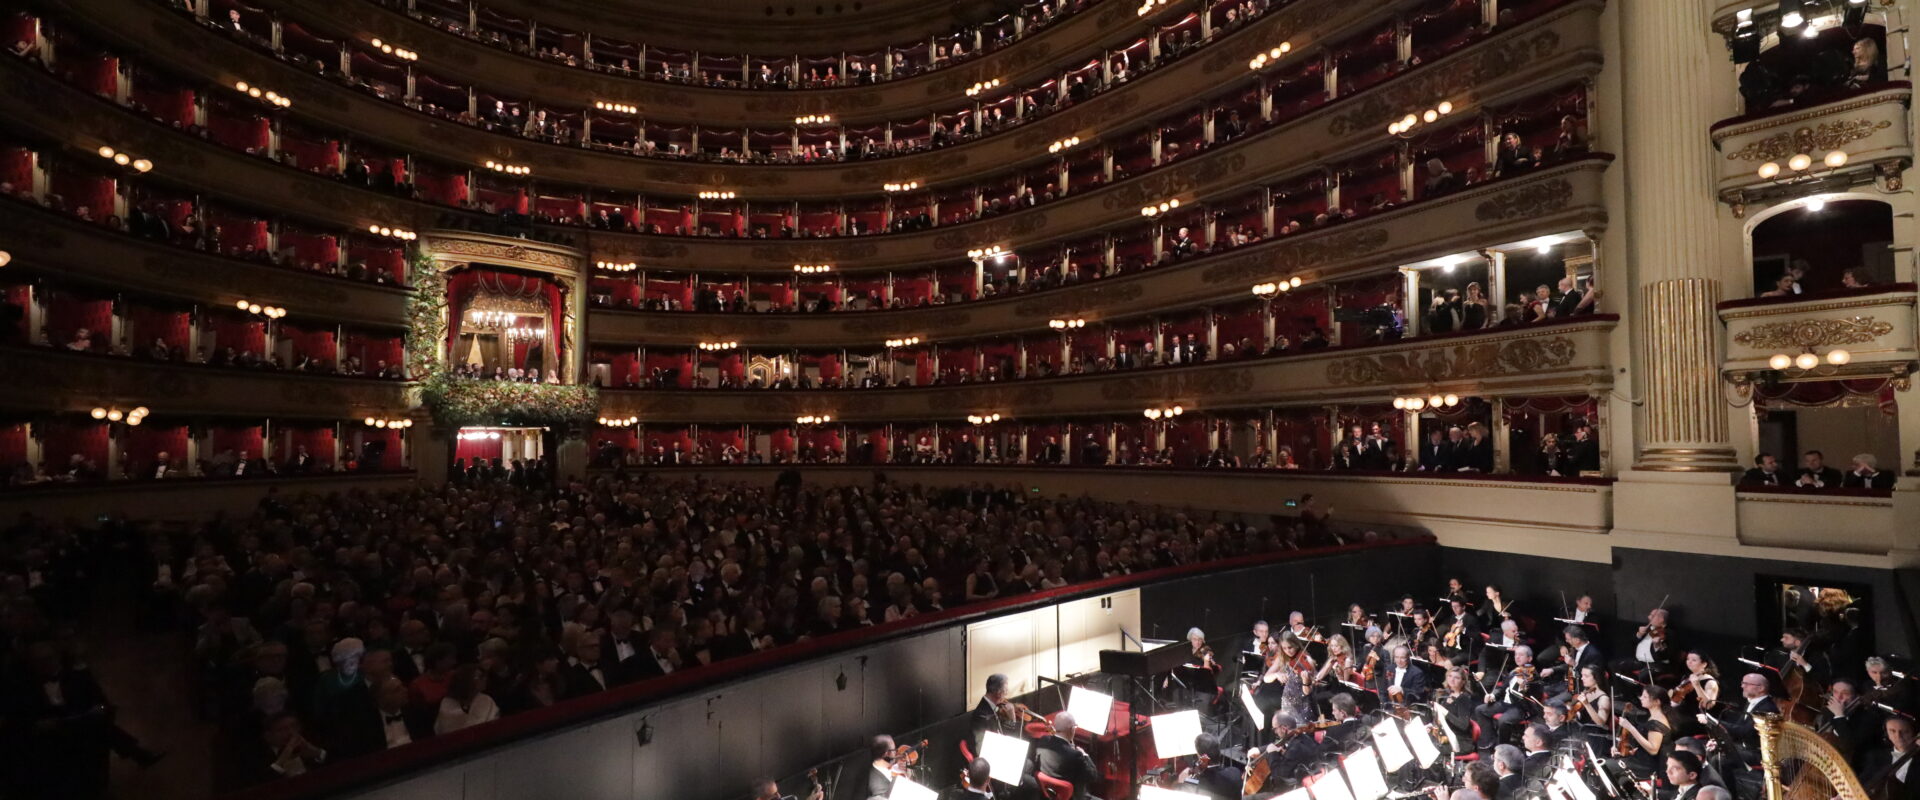 Praktyka śpiewu operowego we Włoszech wpisana na Listę Niematerialnego Dziedzictwa Kulturowego Ludzkości UNESCO